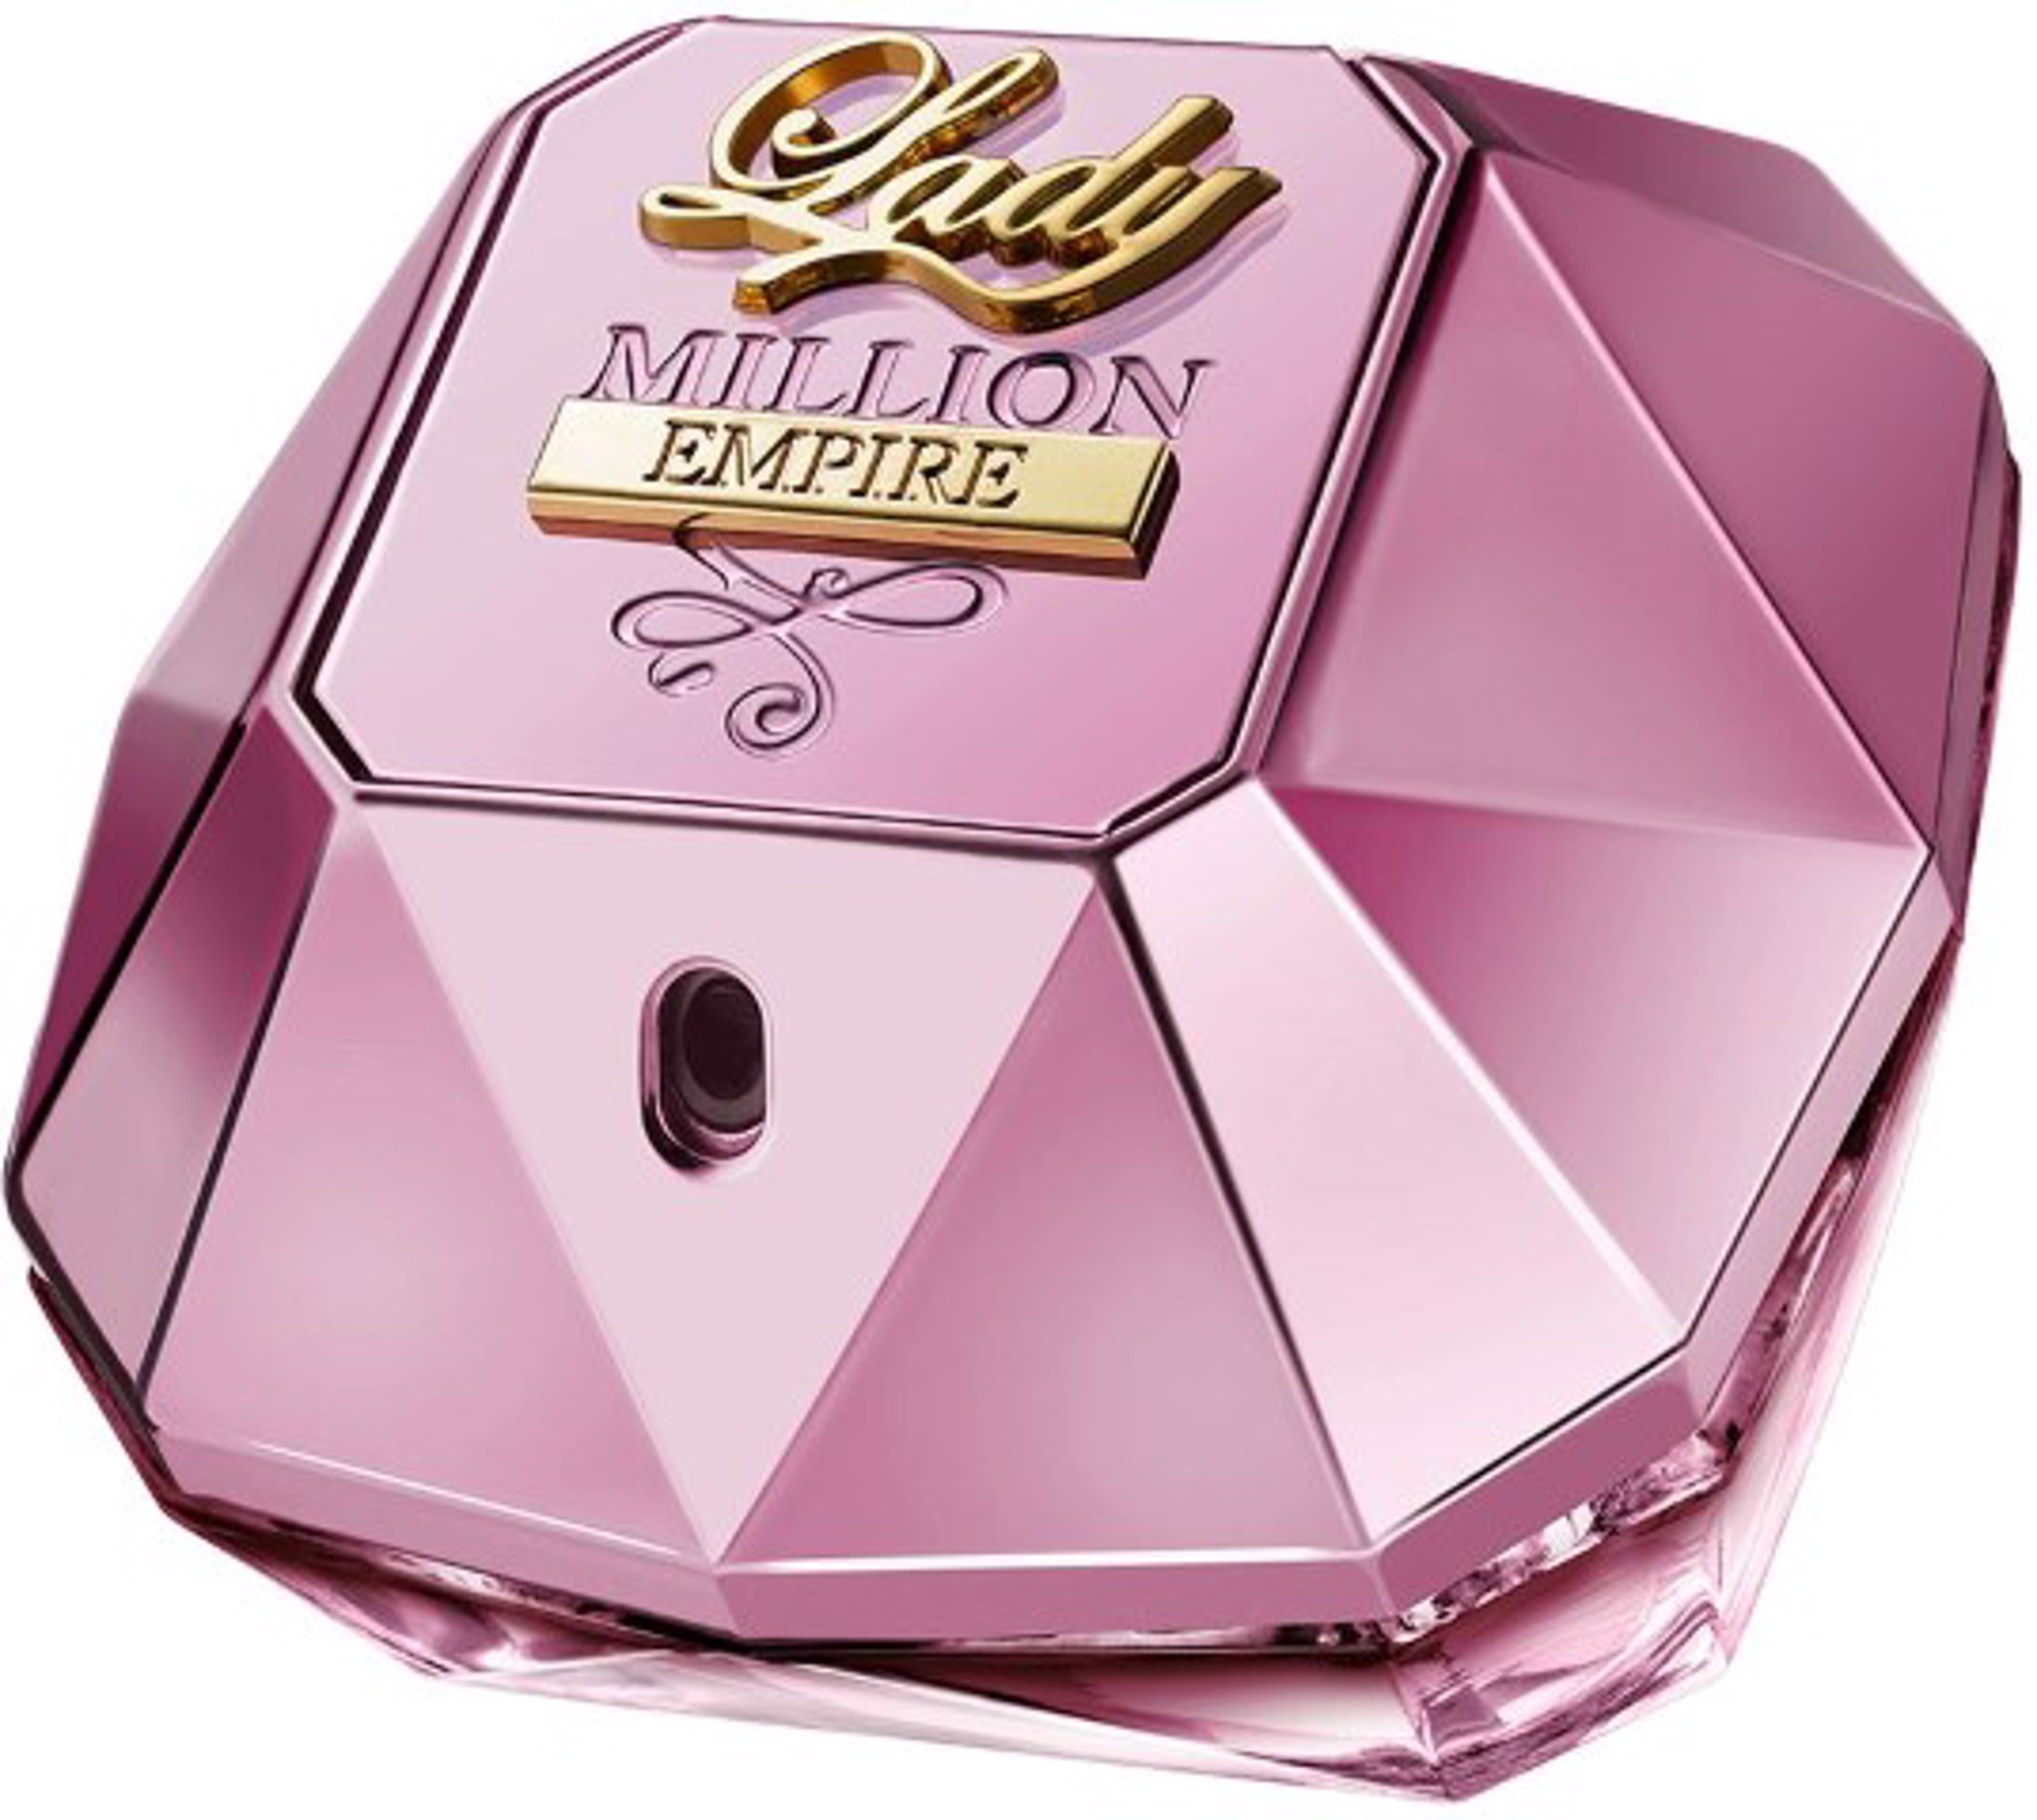 Lady Million Empire Eau De Parfum